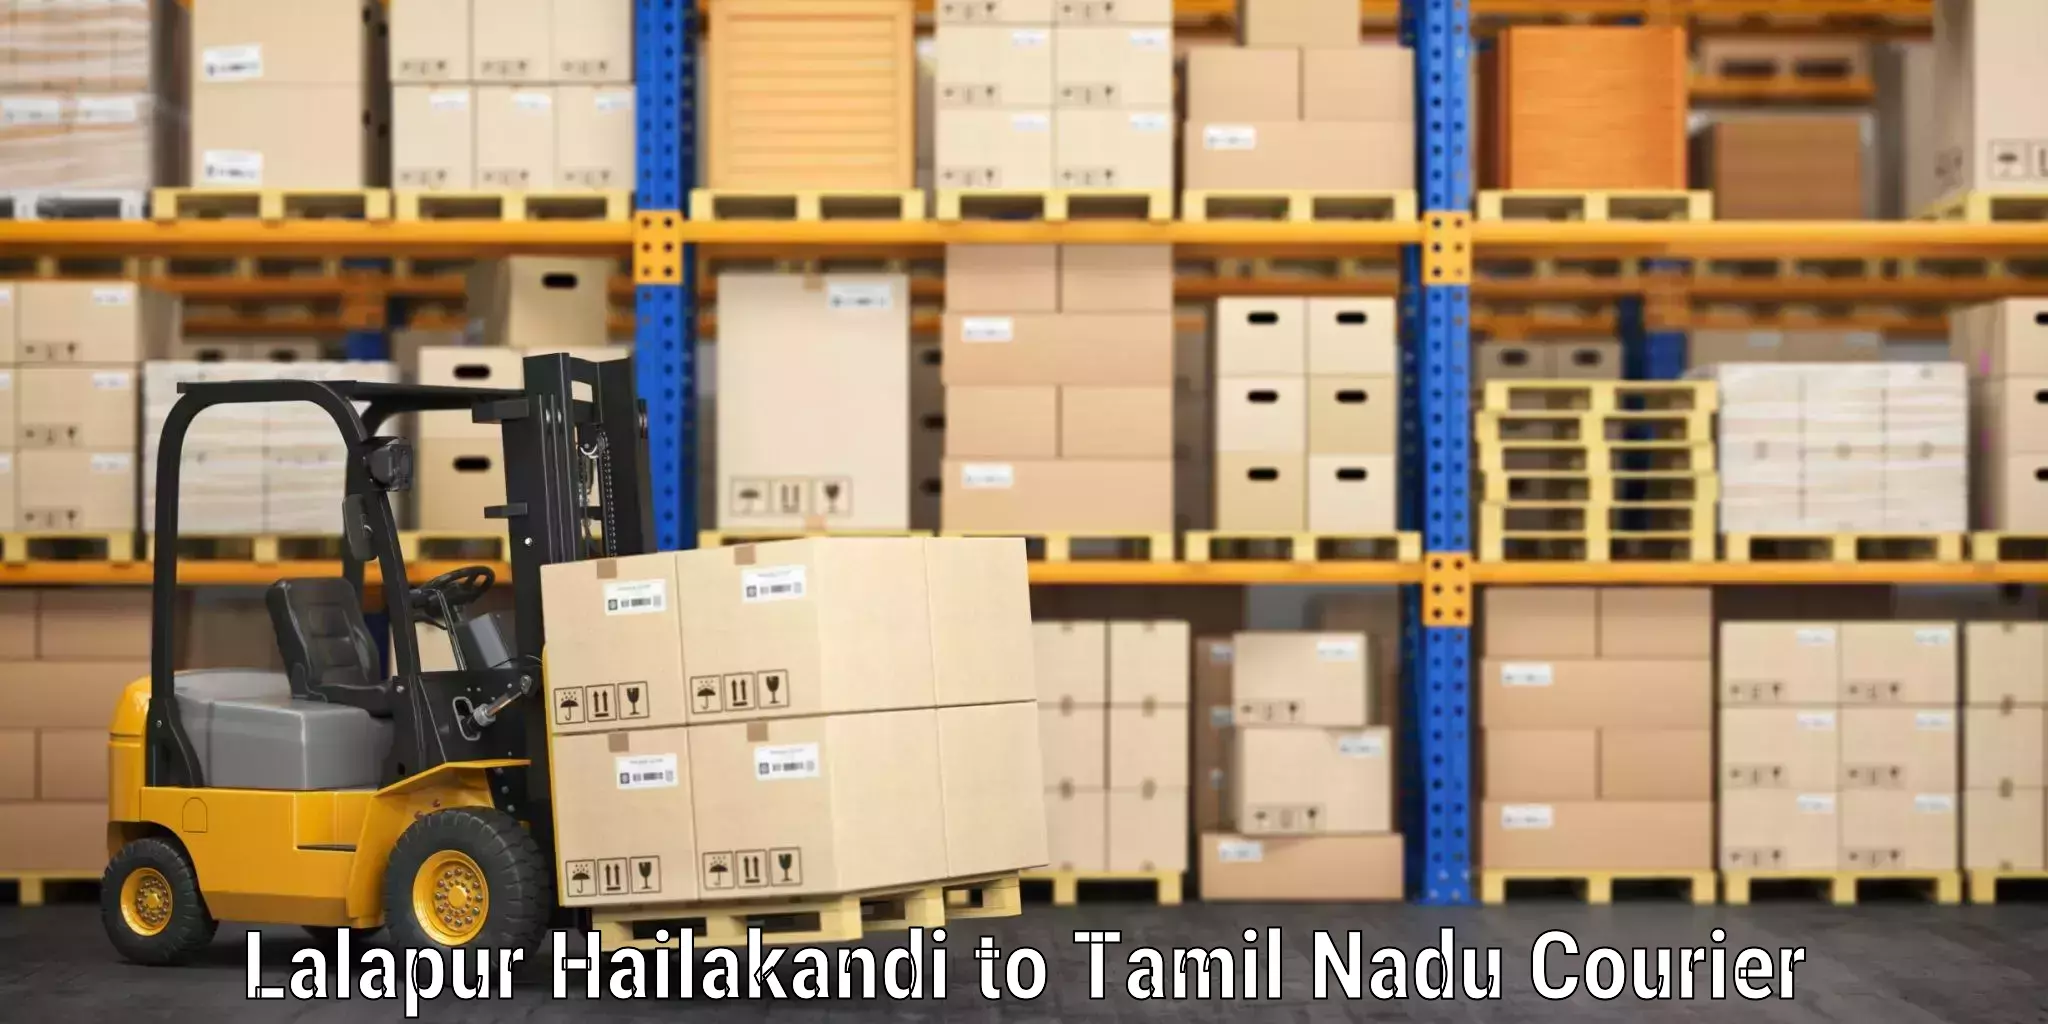 Luggage shipping estimate Lalapur Hailakandi to Tamil Nadu